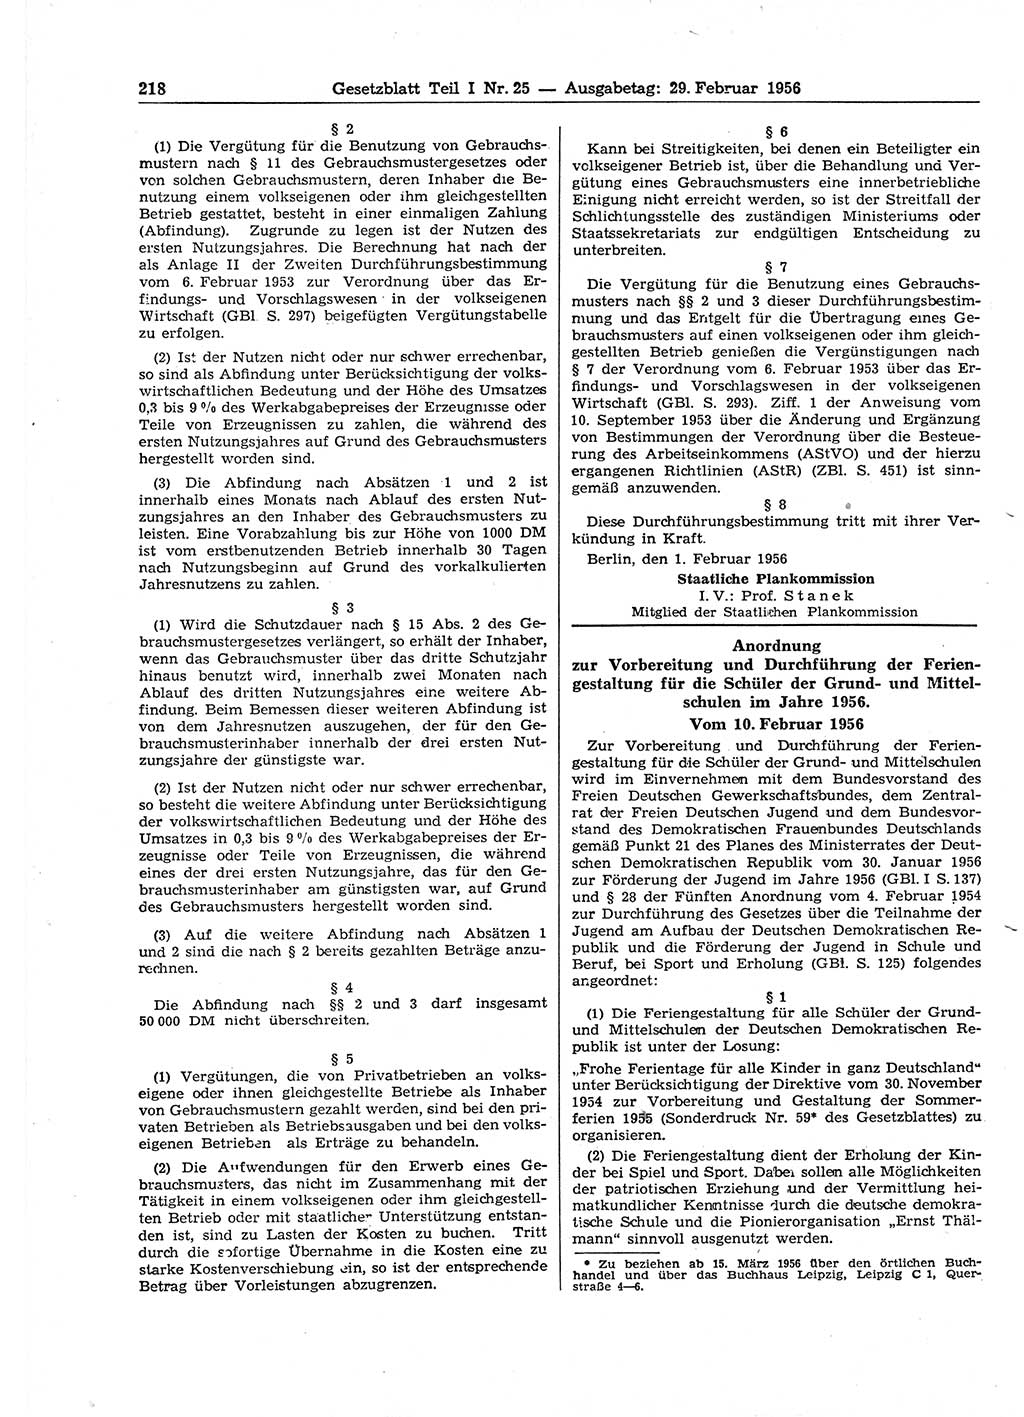 Gesetzblatt (GBl.) der Deutschen Demokratischen Republik (DDR) Teil Ⅰ 1956, Seite 218 (GBl. DDR Ⅰ 1956, S. 218)